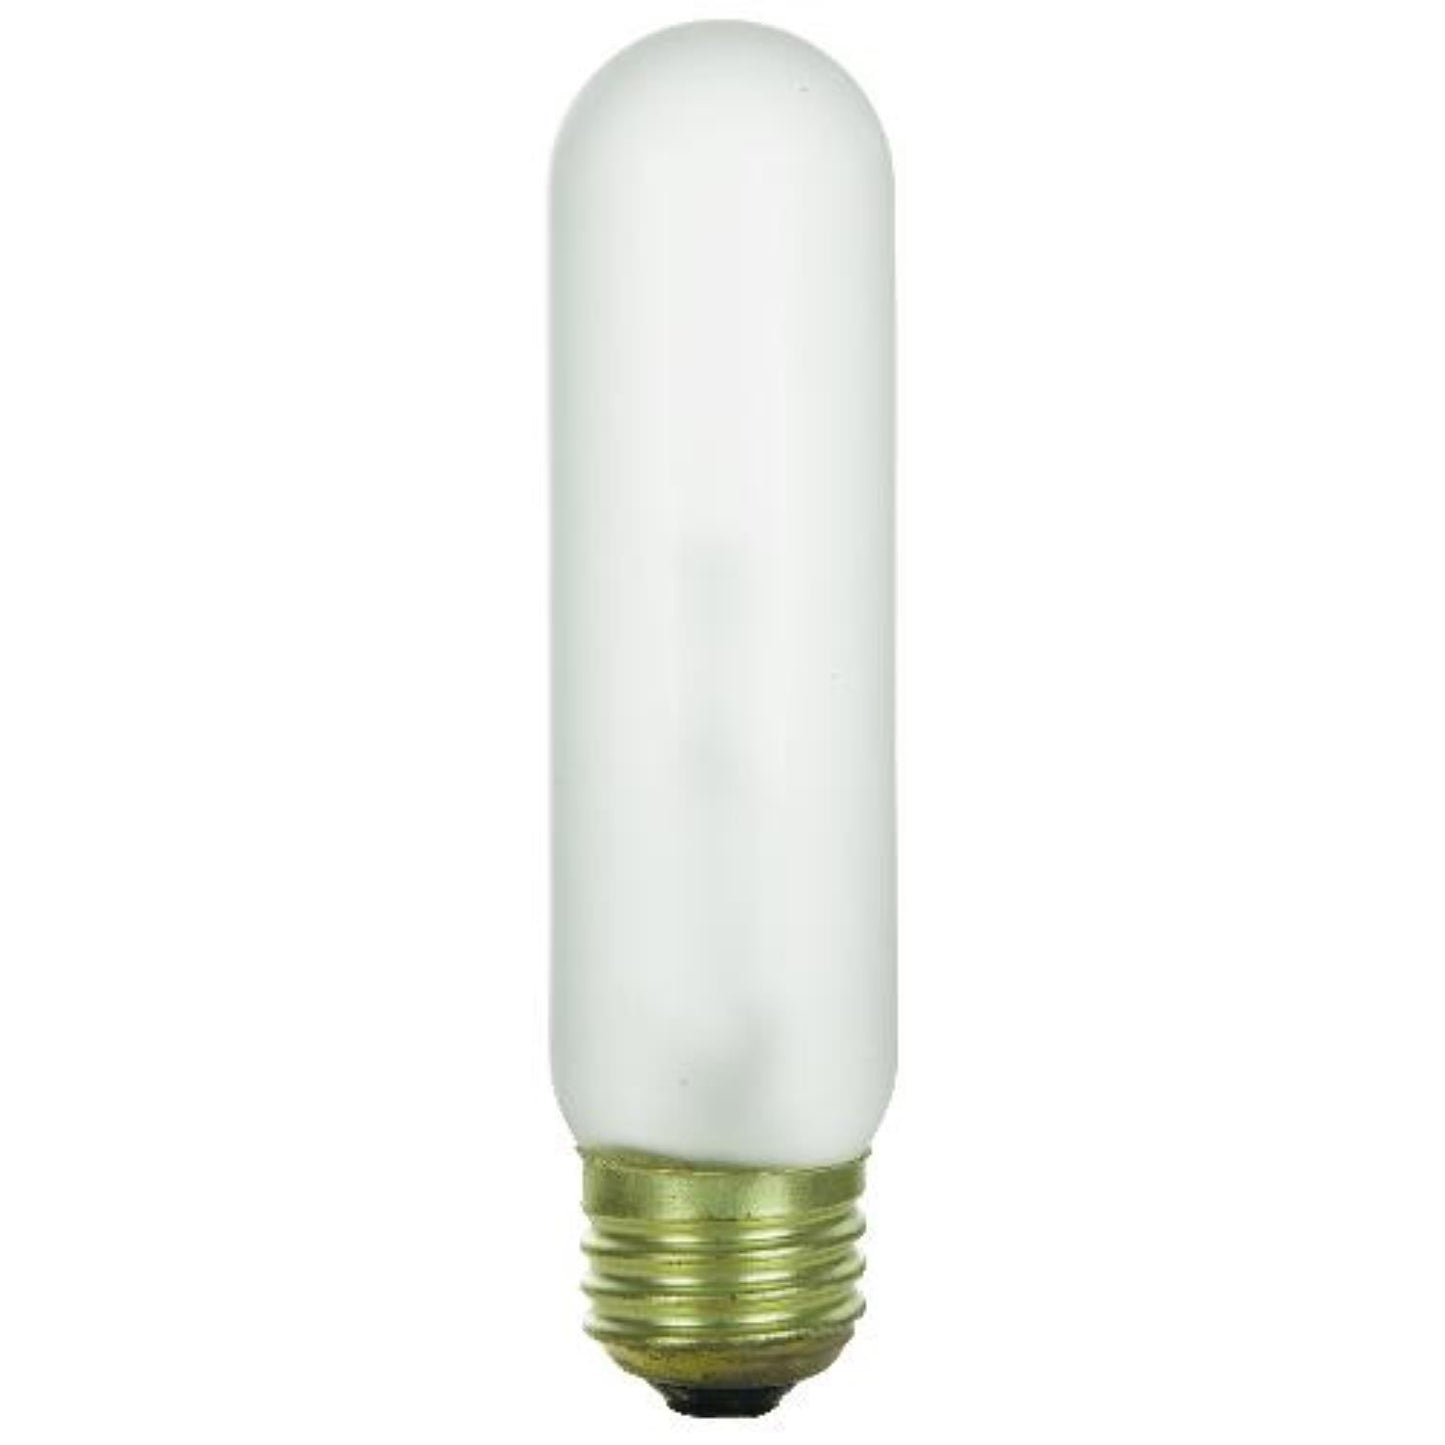 Sunlite 40T10-FR/TS 40 Watt T10 Lamp Medium (E26) Base